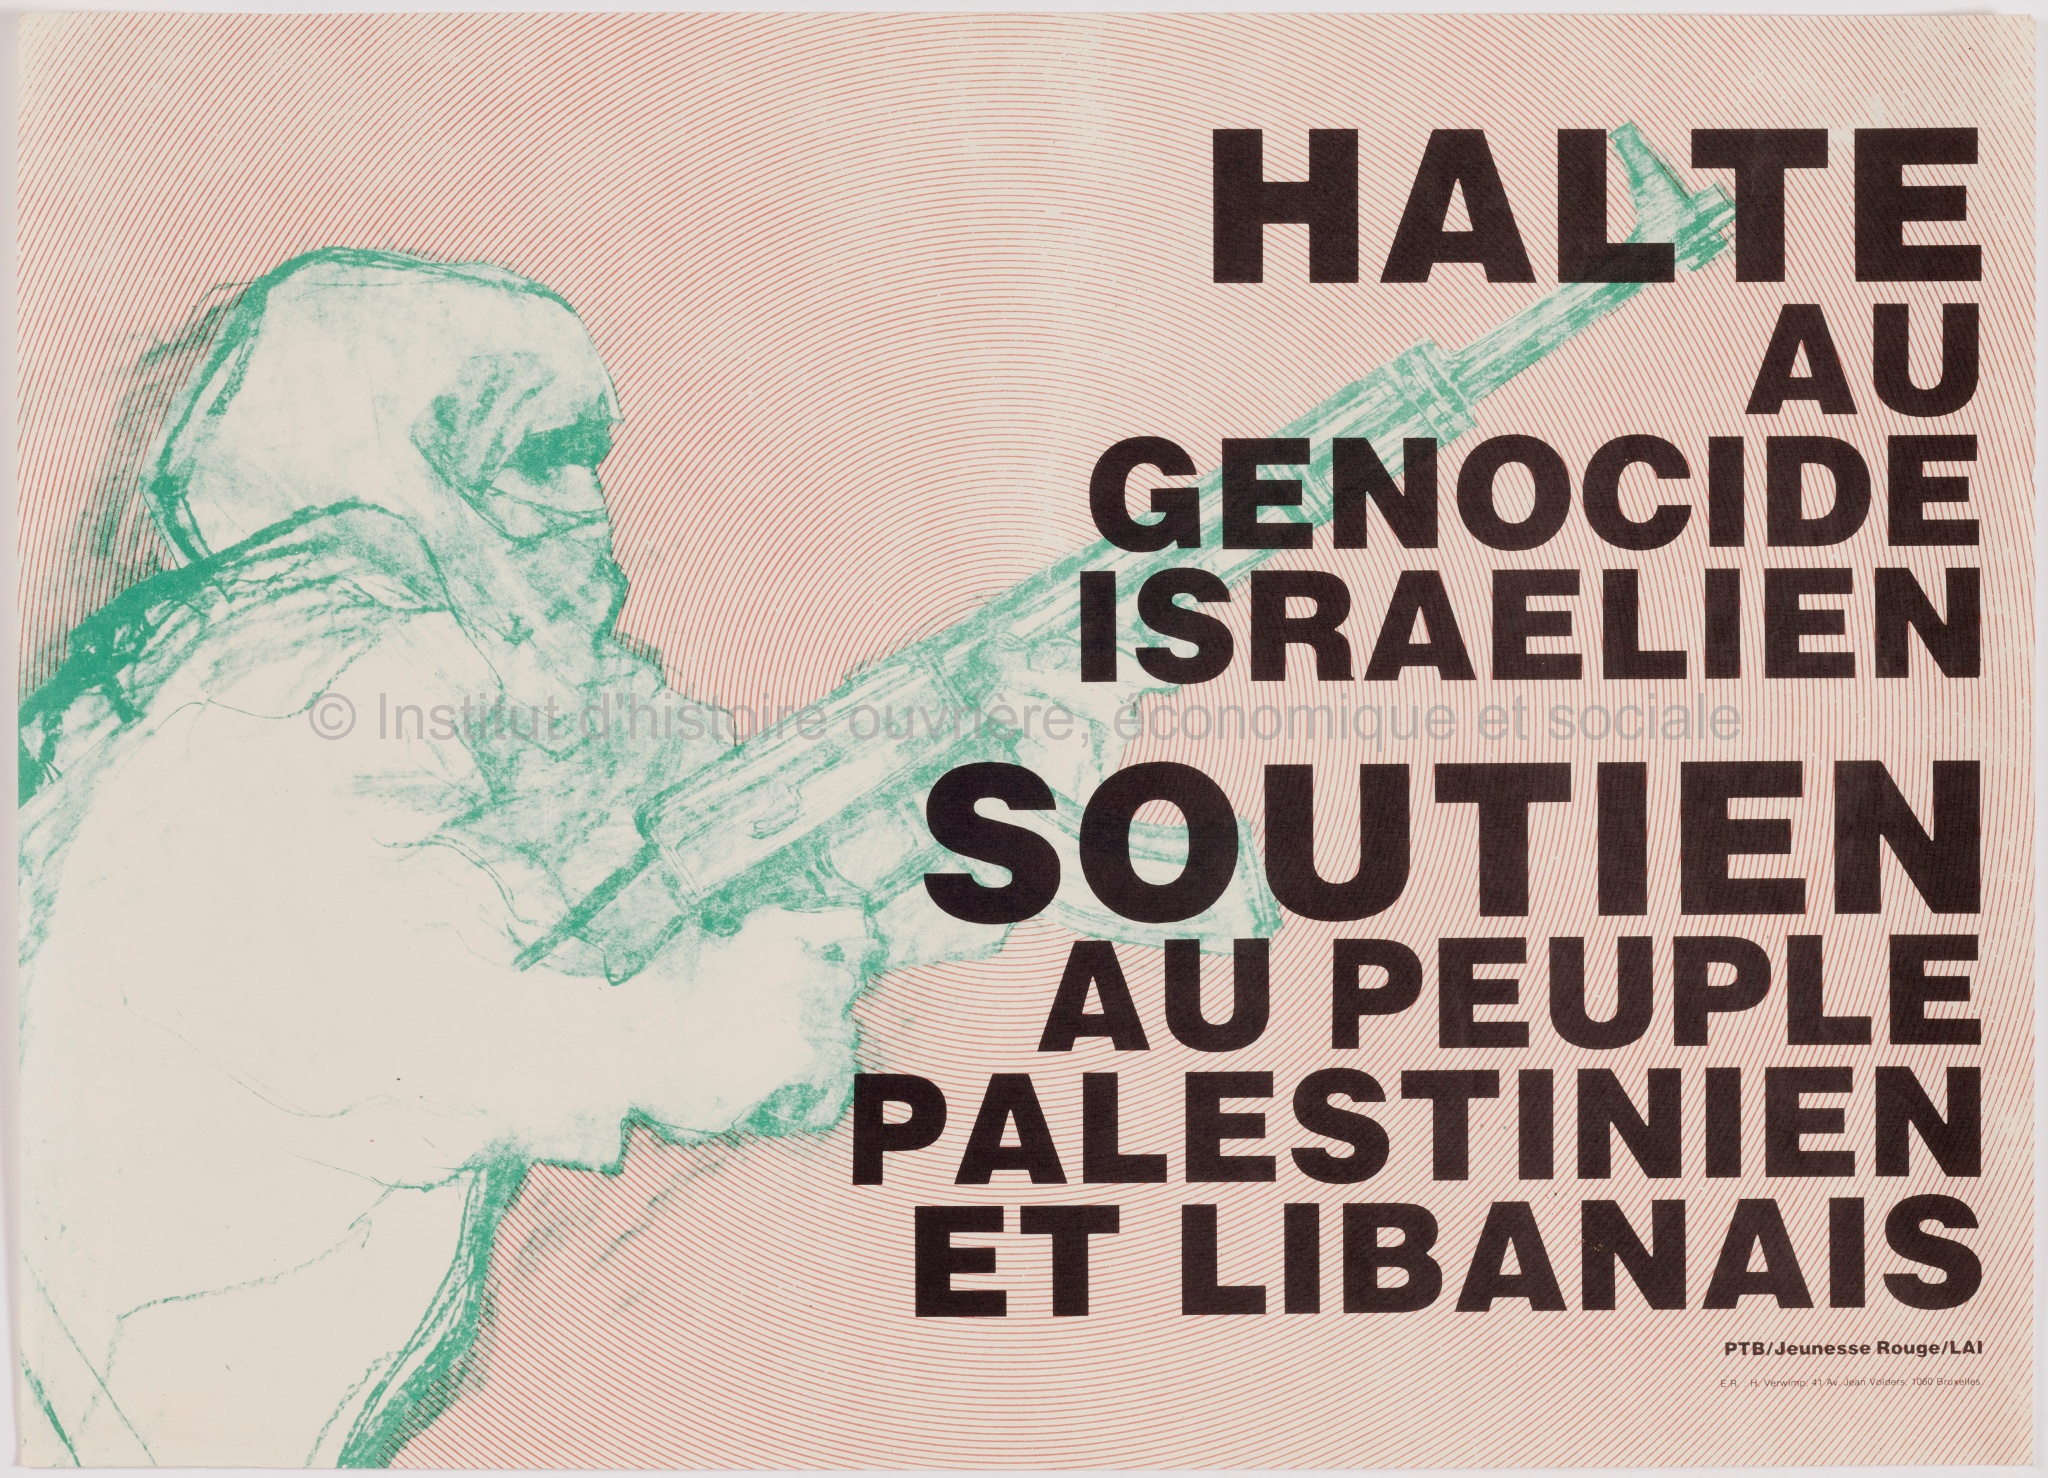 Halte au génocide israélien. Soutien au peuple palestinien et libanais